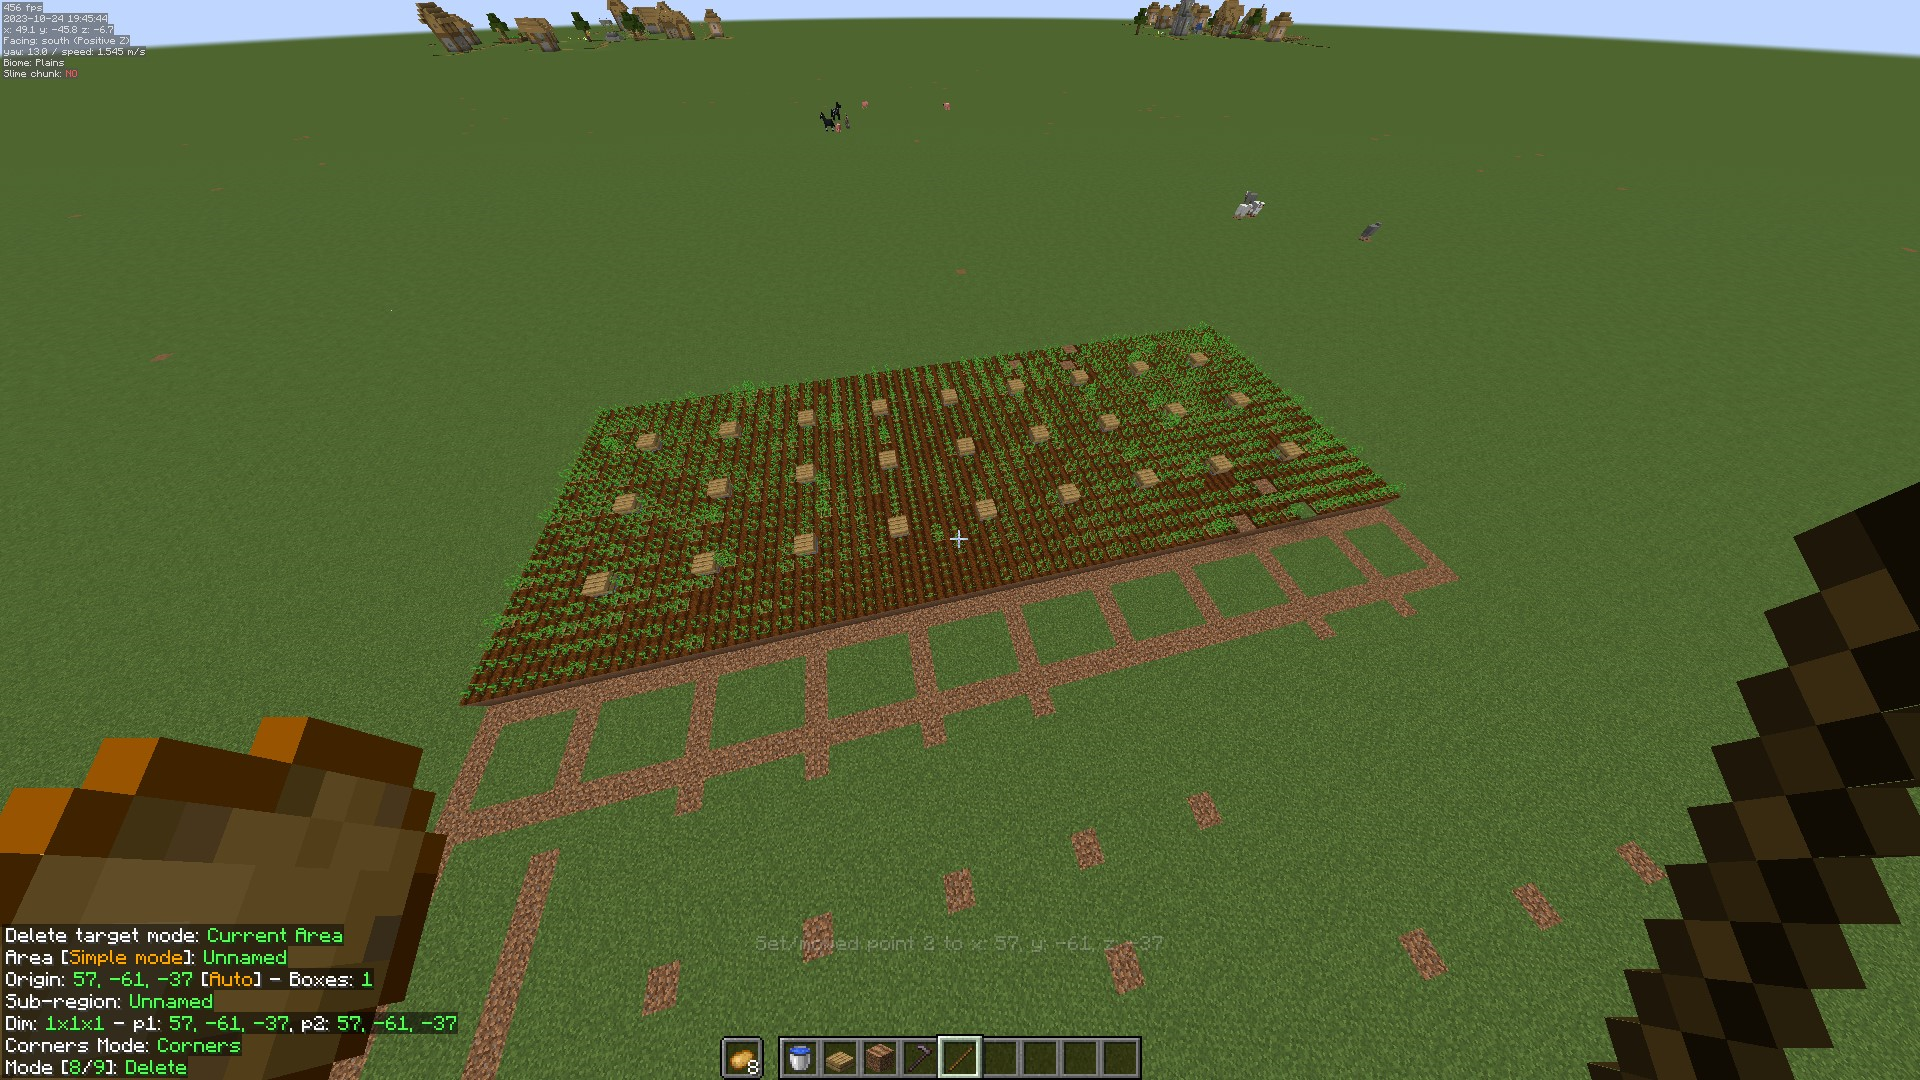 Minecract Potato Farm V1 schematic (litematic)